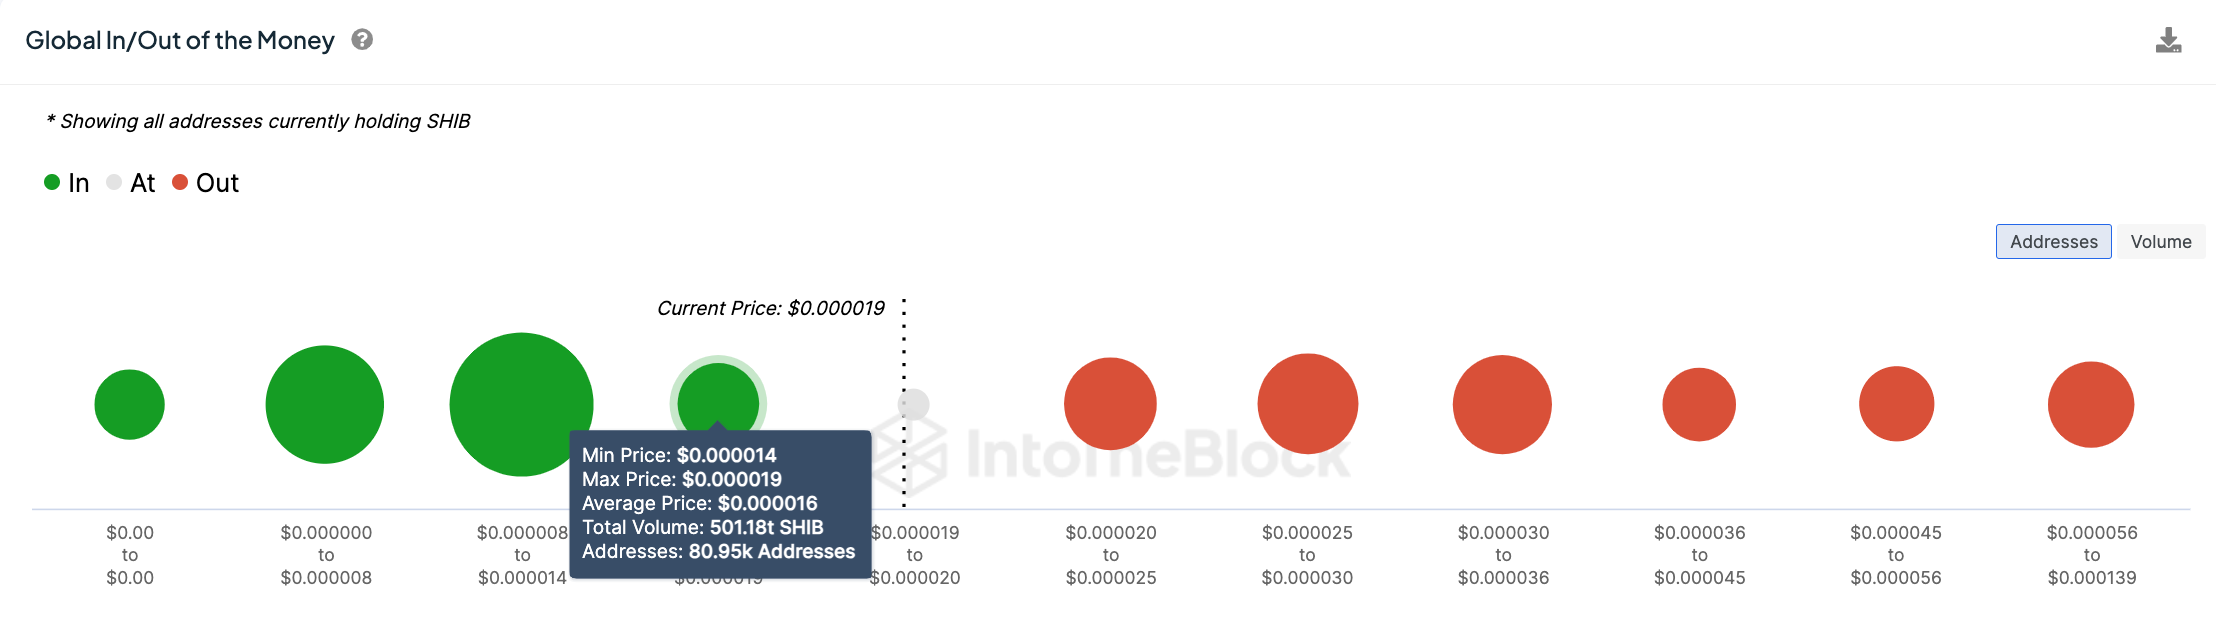 Shiba Inu Price Analysis.Shiba Inu Price Analysis. Source: TradingView